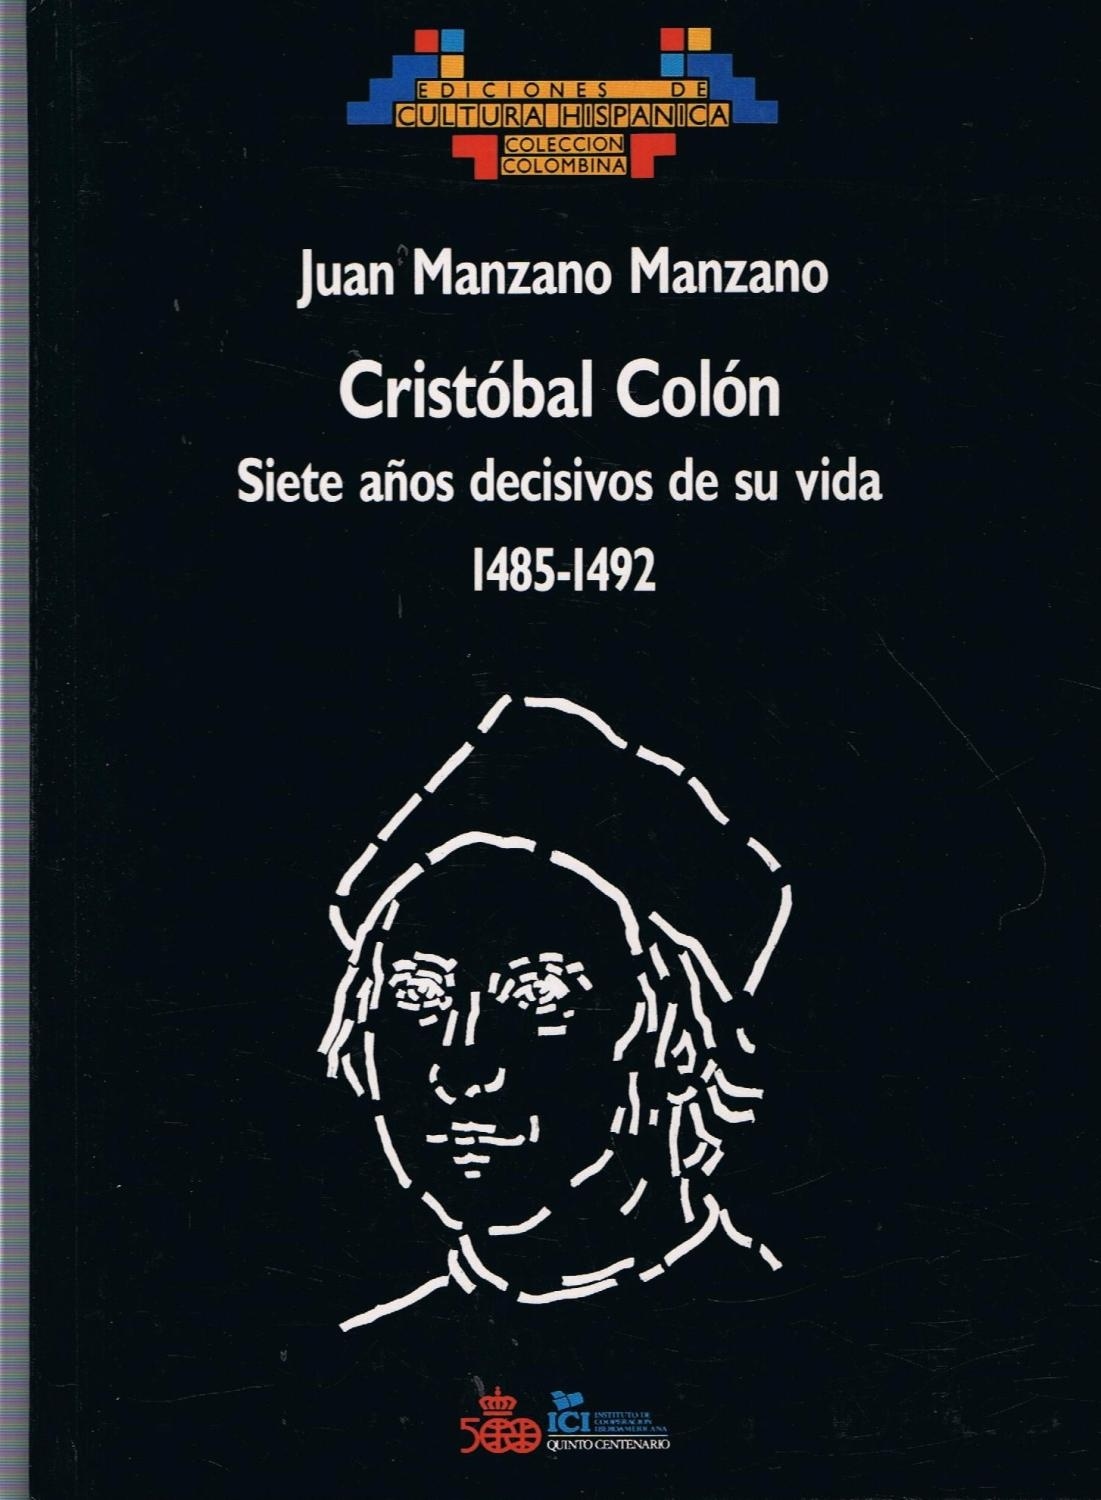 Cristóbal Colón, siete años decisivos de su vida (1485-1492)